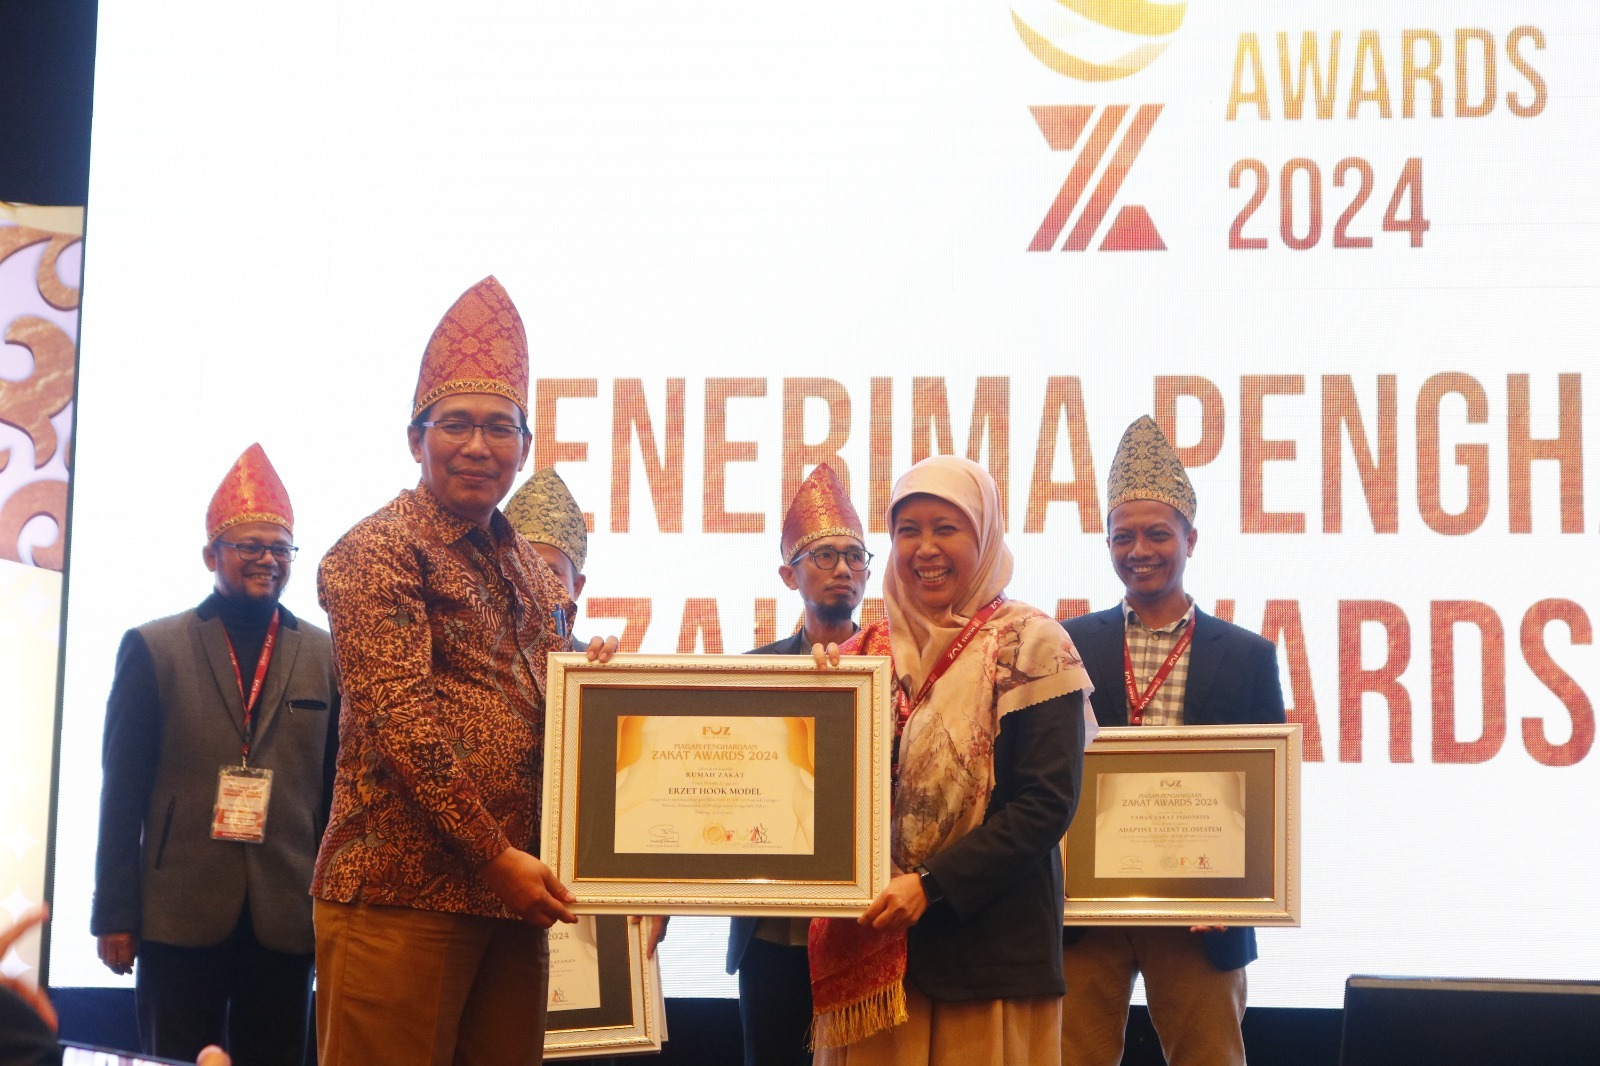 ZA 2024: Mengapresiasi Inovasi, Memberdayakan Masyarakat untuk Indonesia Emas 2045."